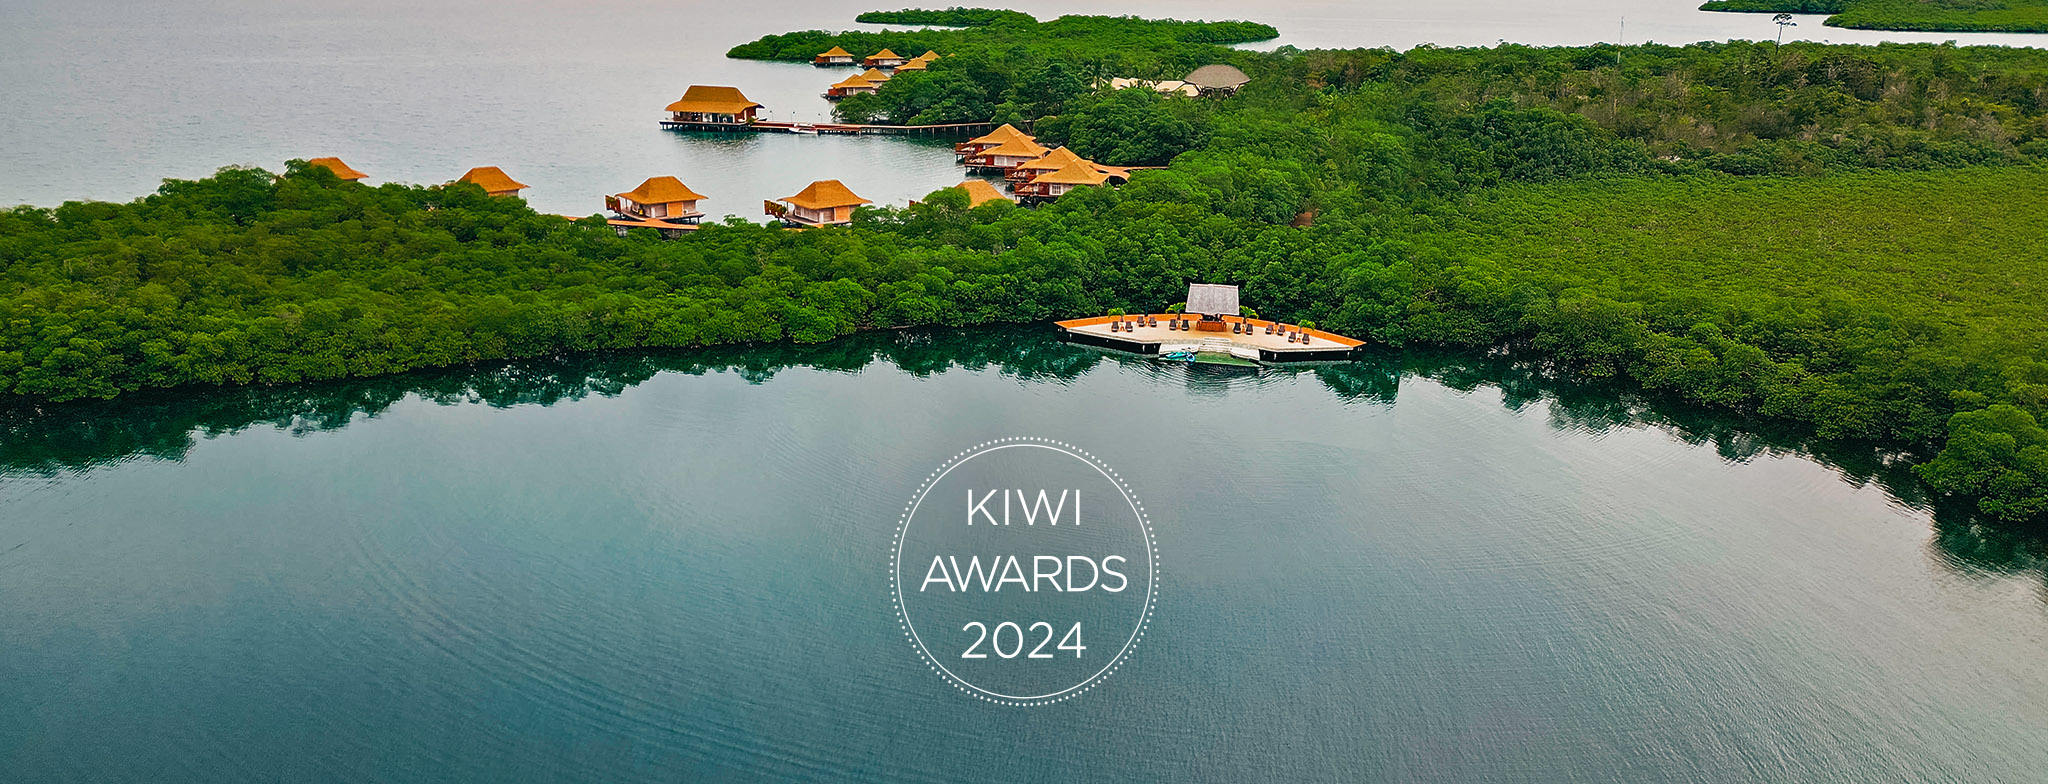 Kiwi Collection Hotel Awards 2024